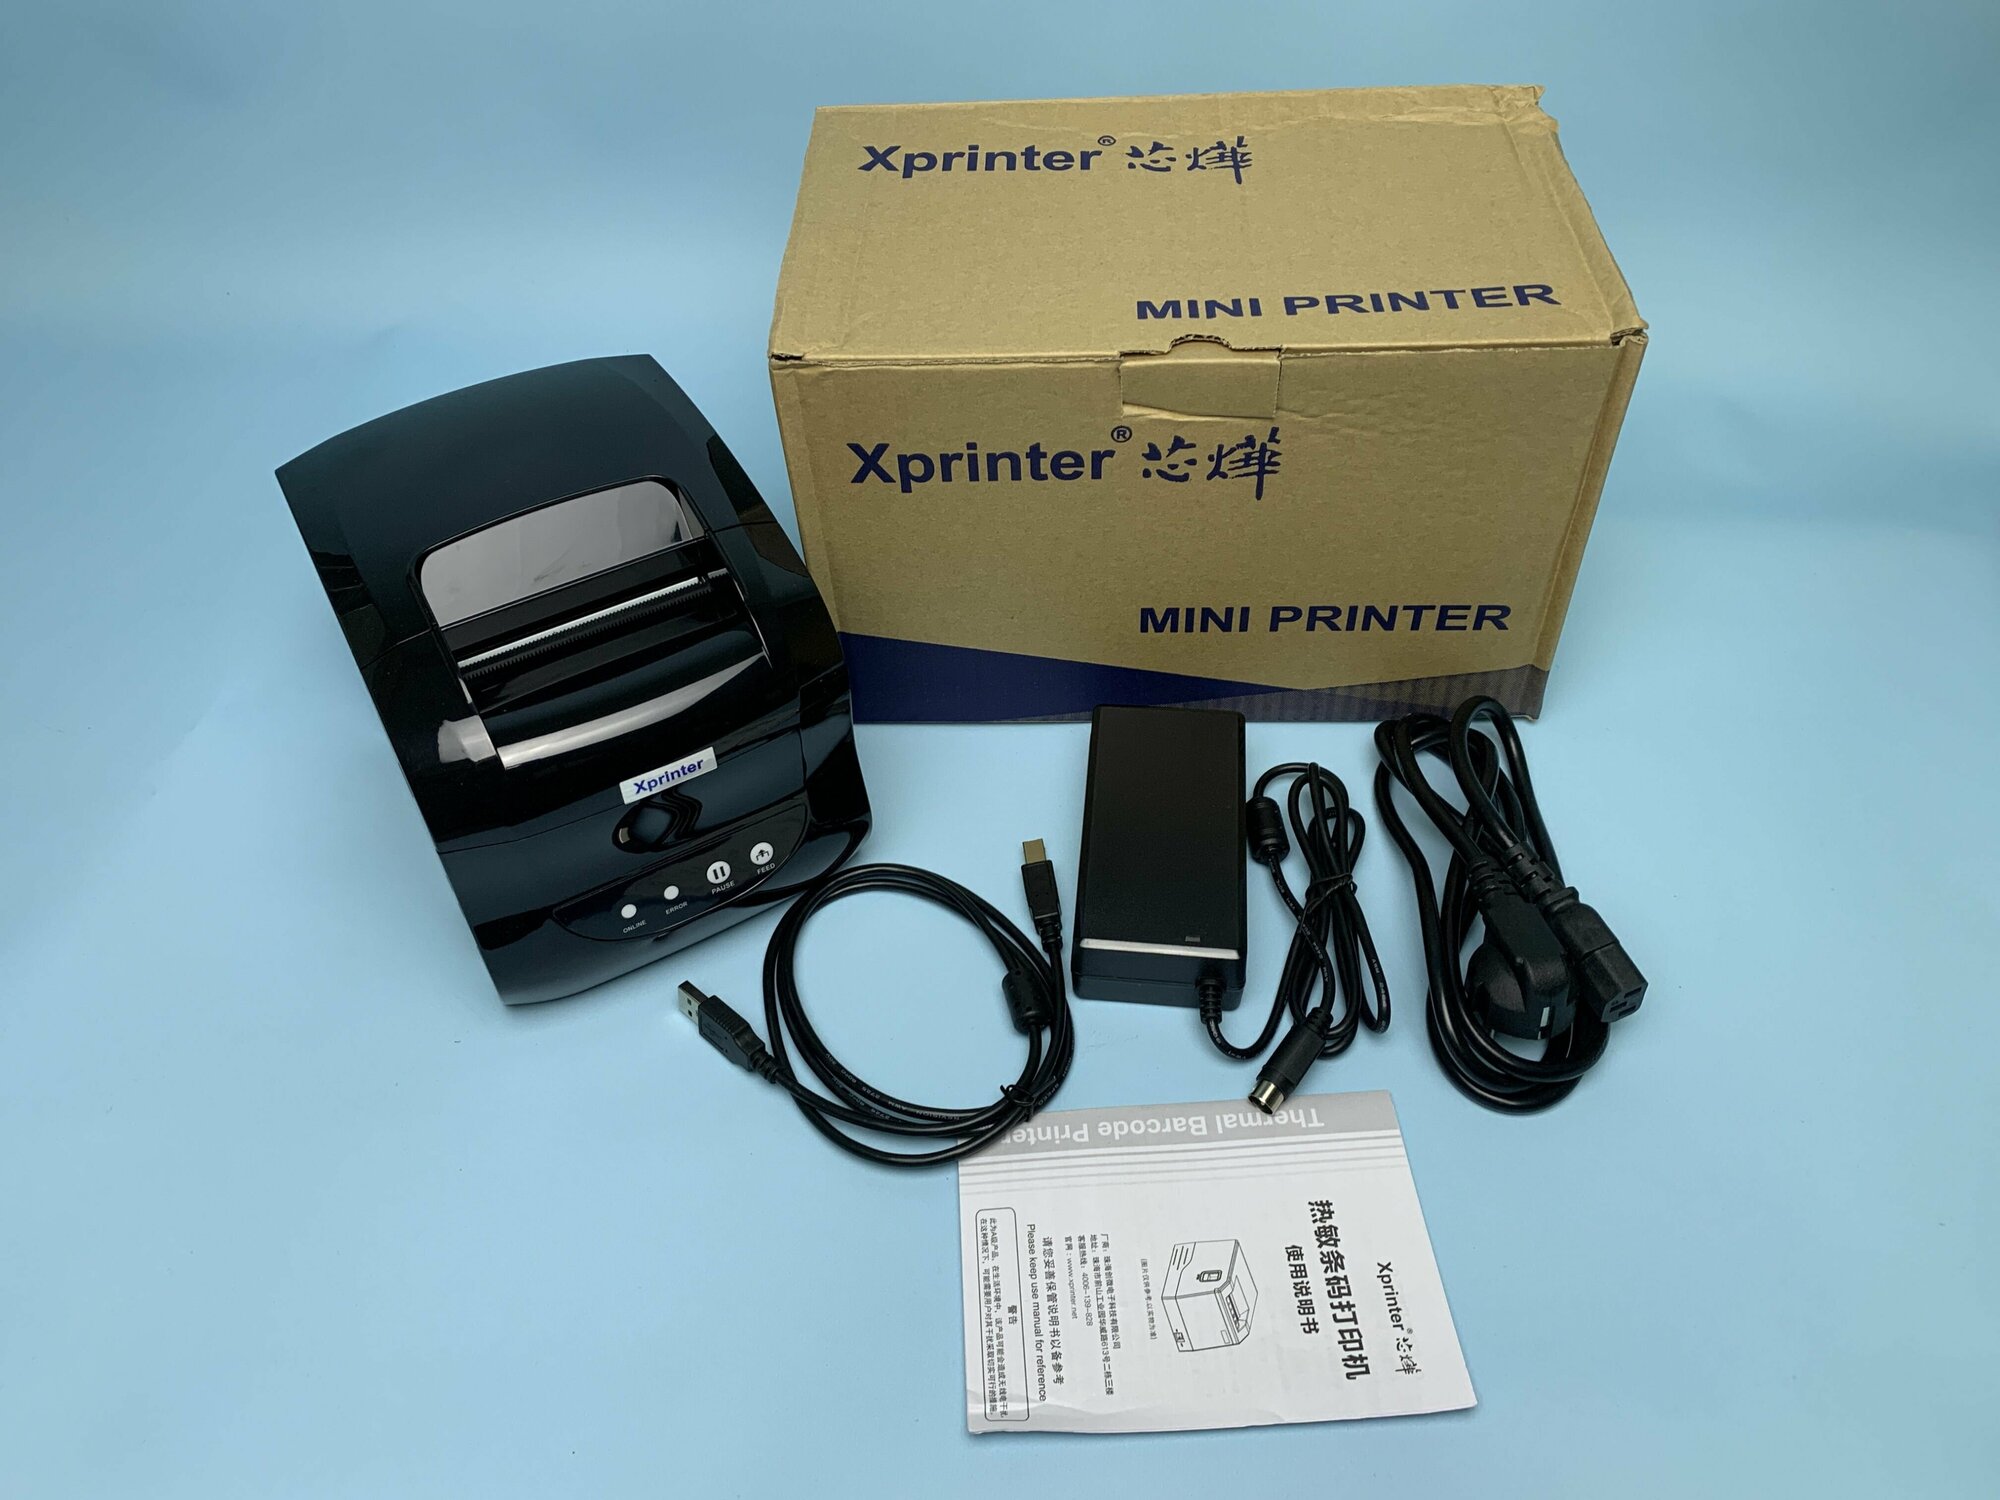 Принтер штрих-кода/чеков/наклеек термо Xprinter XP-365B USB+ BlueTooth печать с андройда